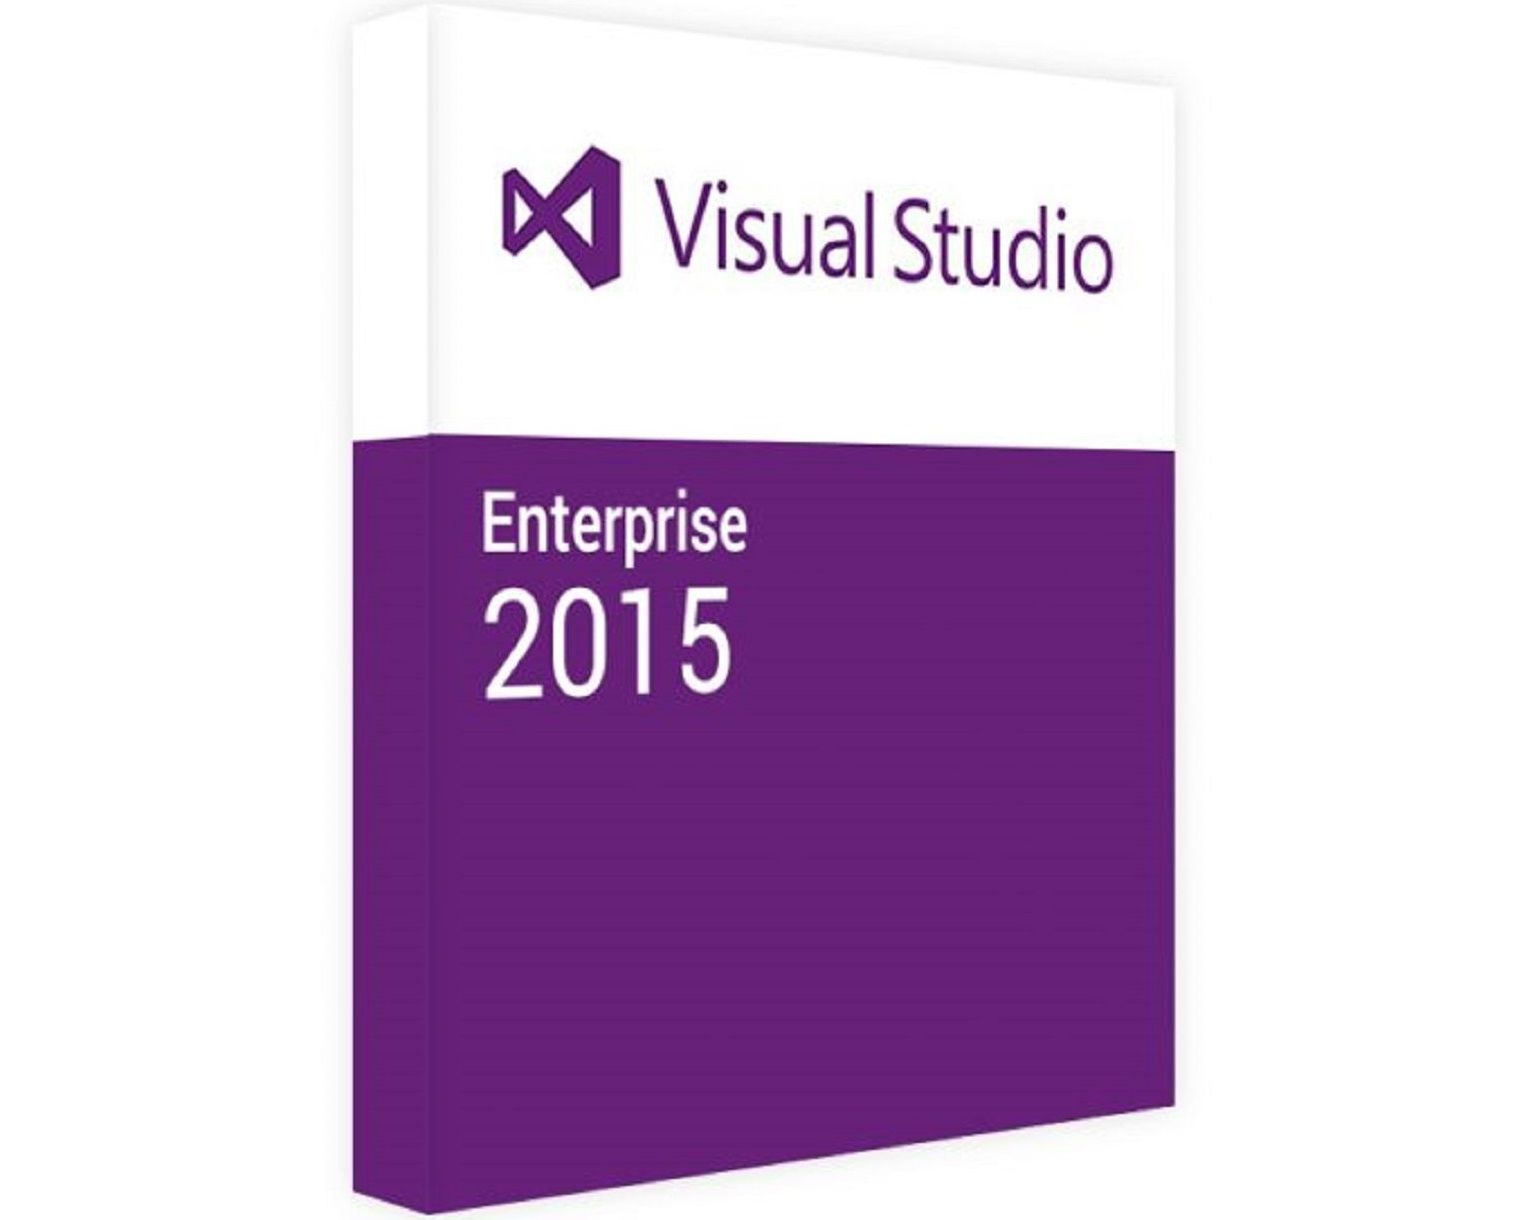 Visual Studio 2015 Enterprise: Buy Key Online for Less